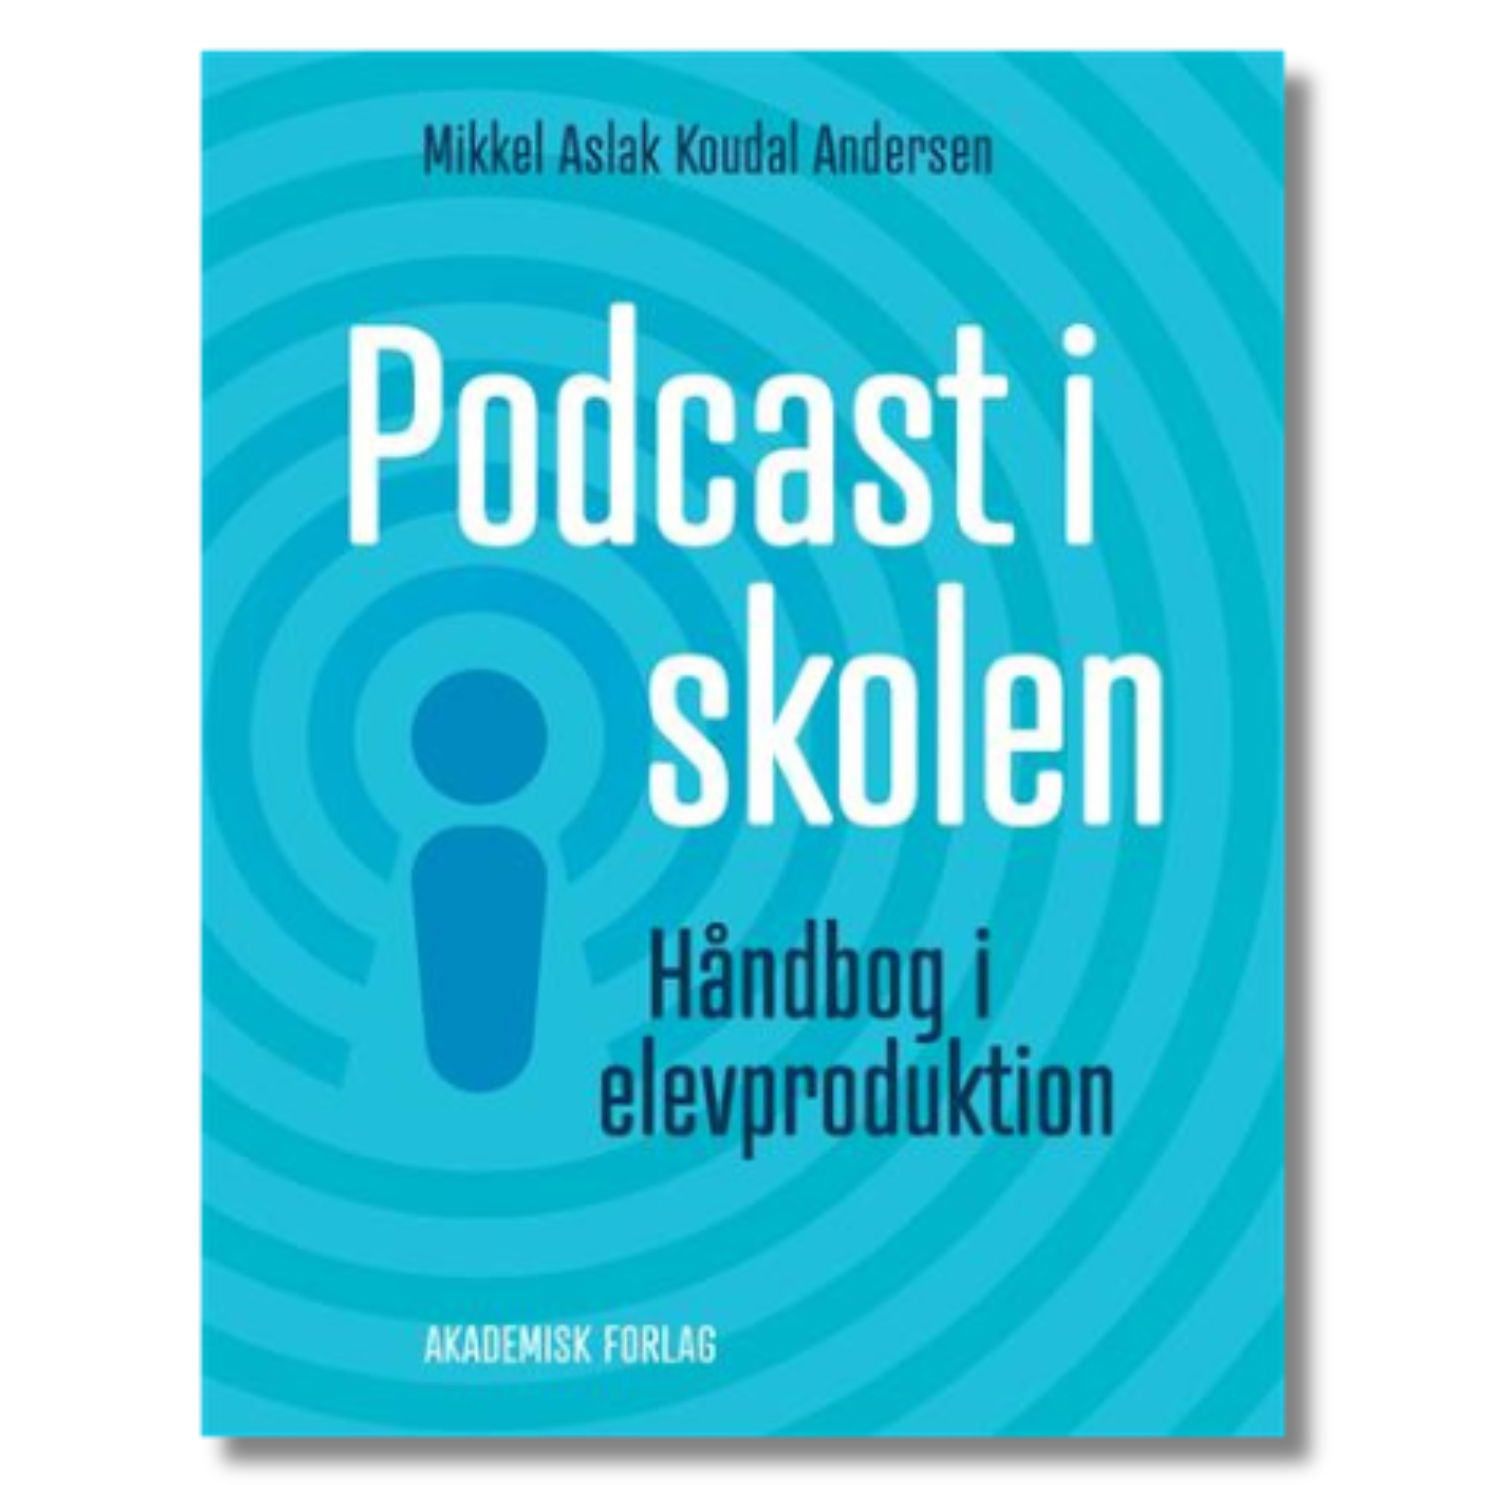 Podcast i skolen af Mikkel Aslak Koudal Andersen